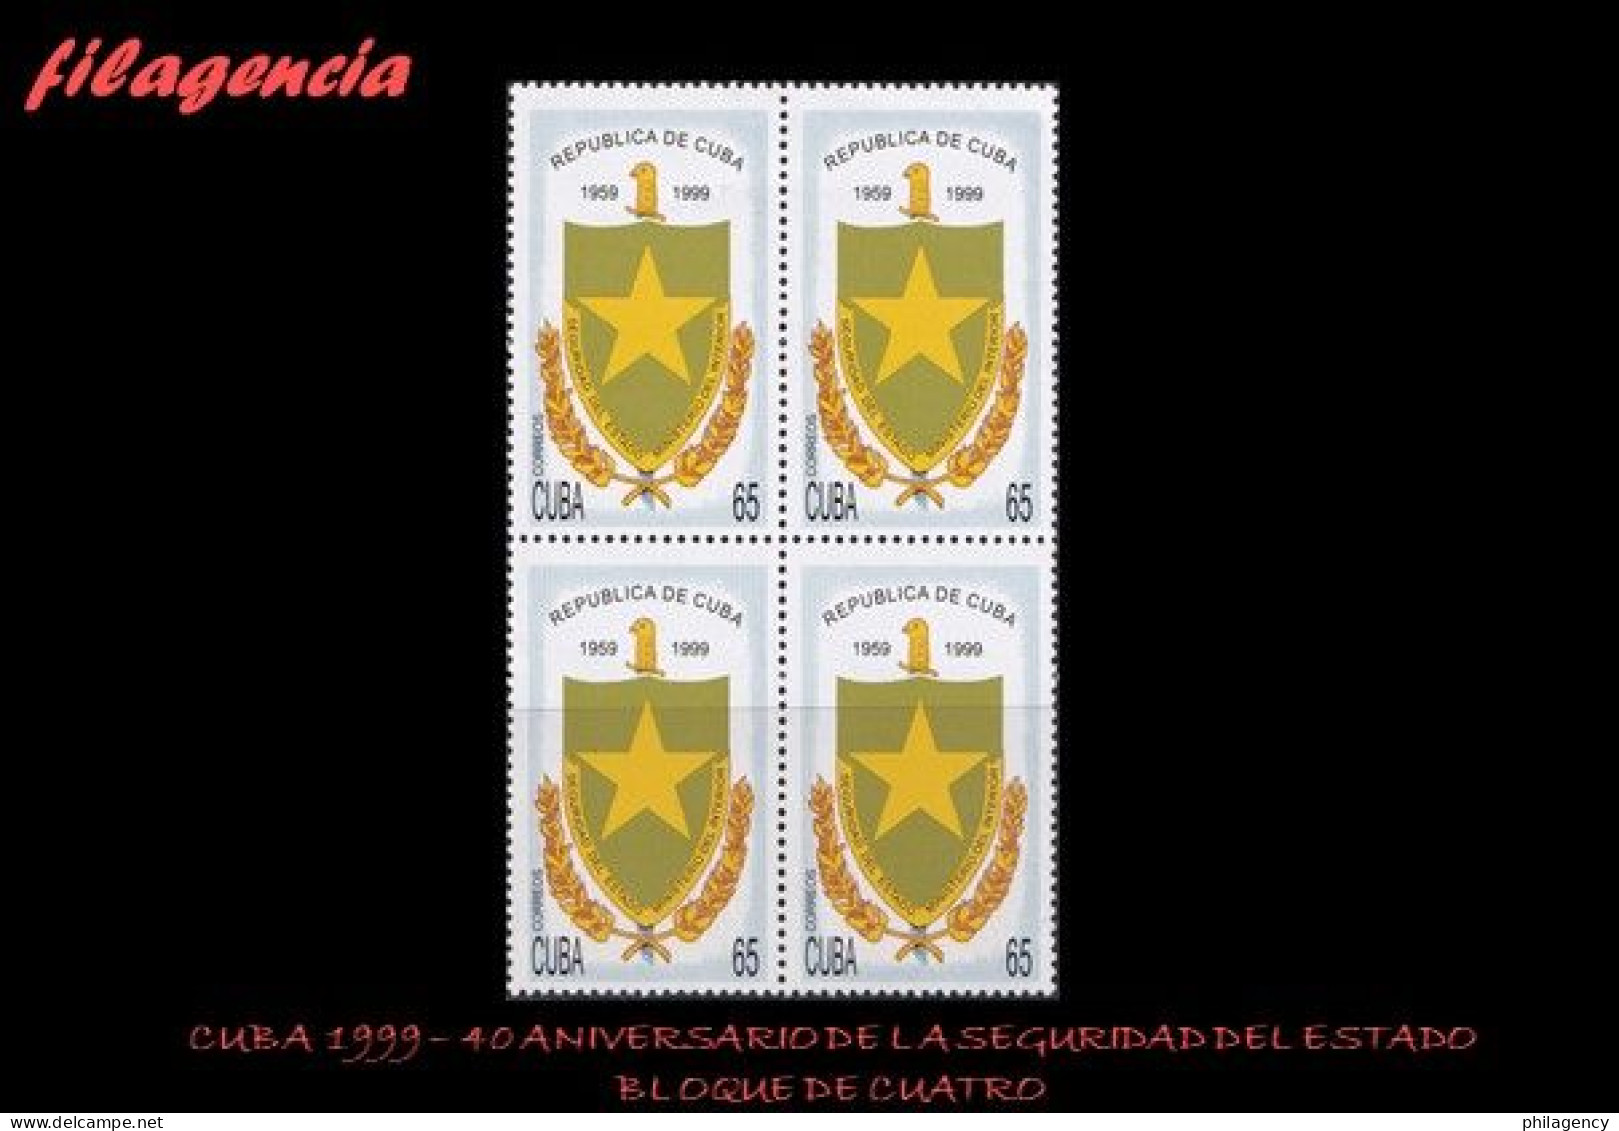 CUBA. BLOQUES DE CUATRO. 1999-09 40 ANIVERSARIO DE LOS ÓRGANOS DE LA SEGURIDAD DEL ESTADO - Unused Stamps